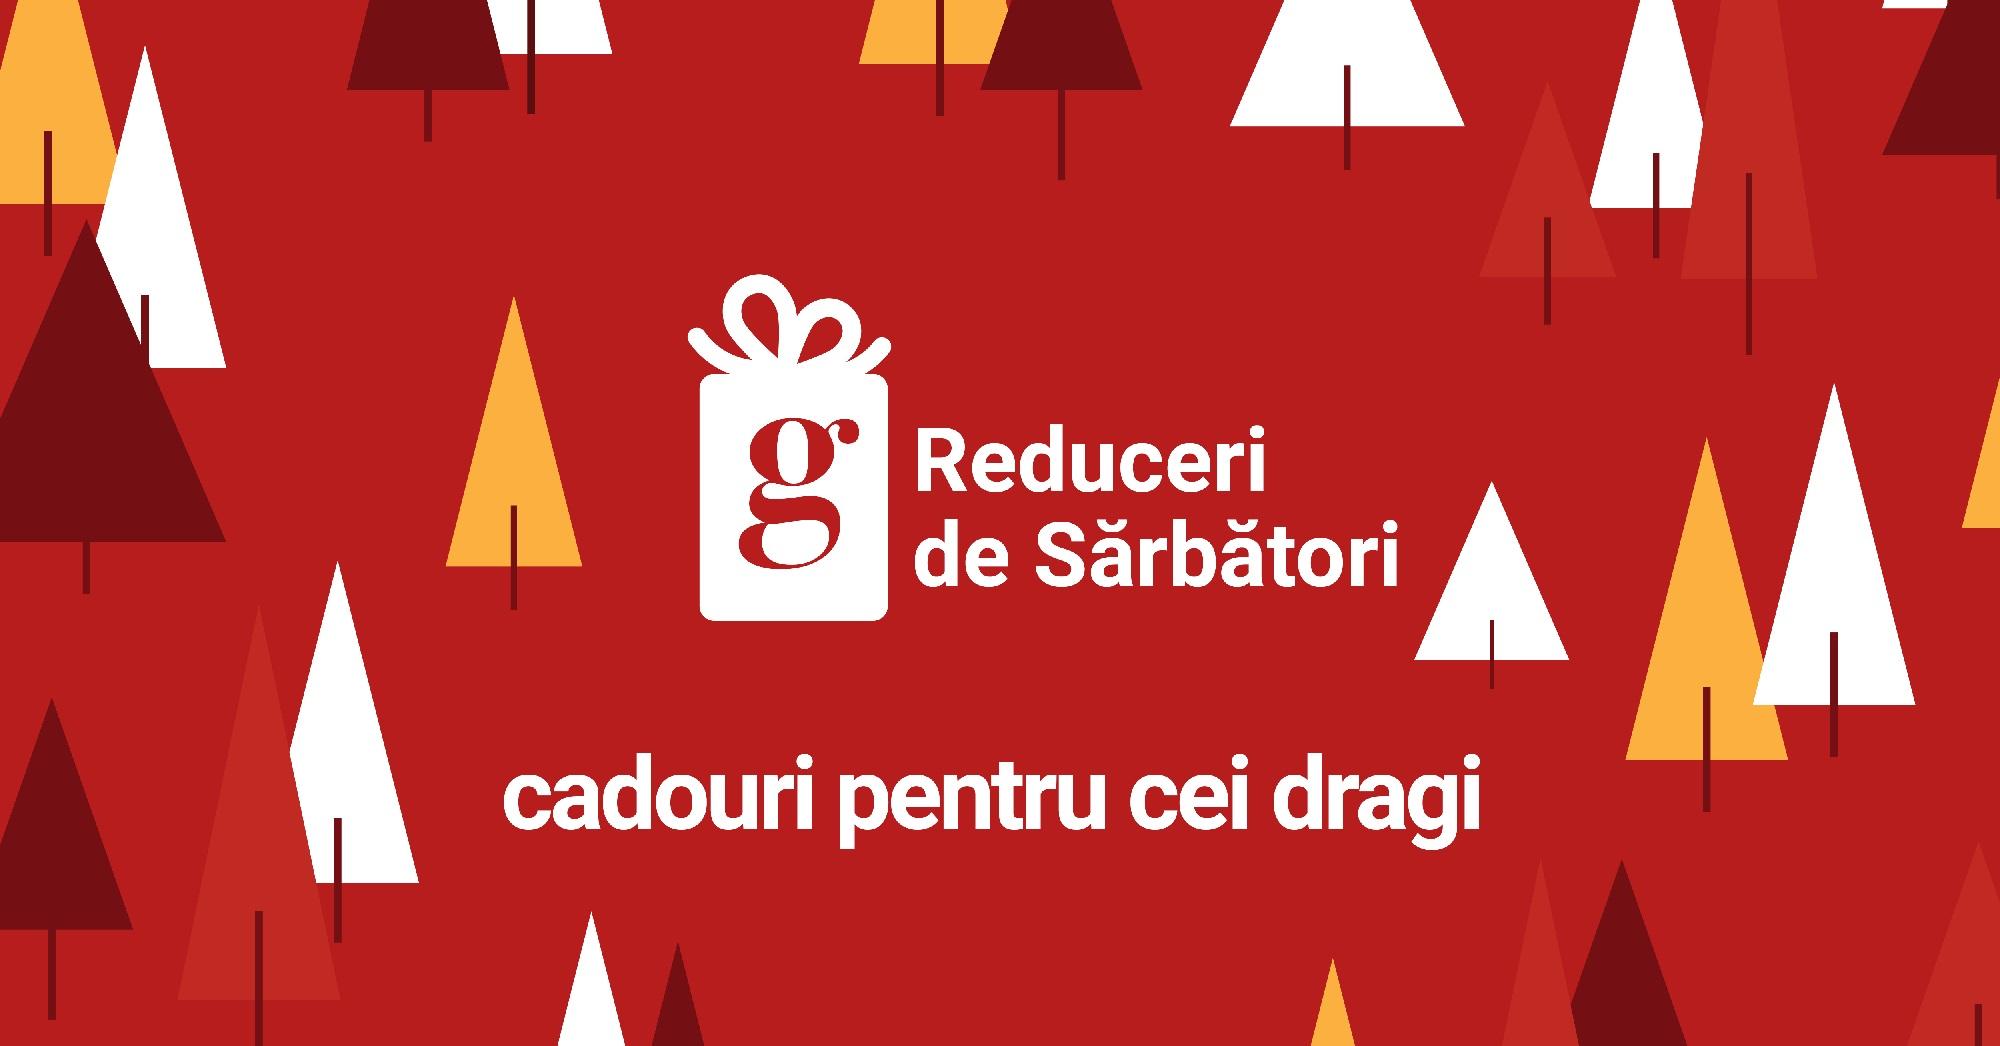 (P) Garmin Romania: Sezonul reducerilor începe pe 10 noiembrie